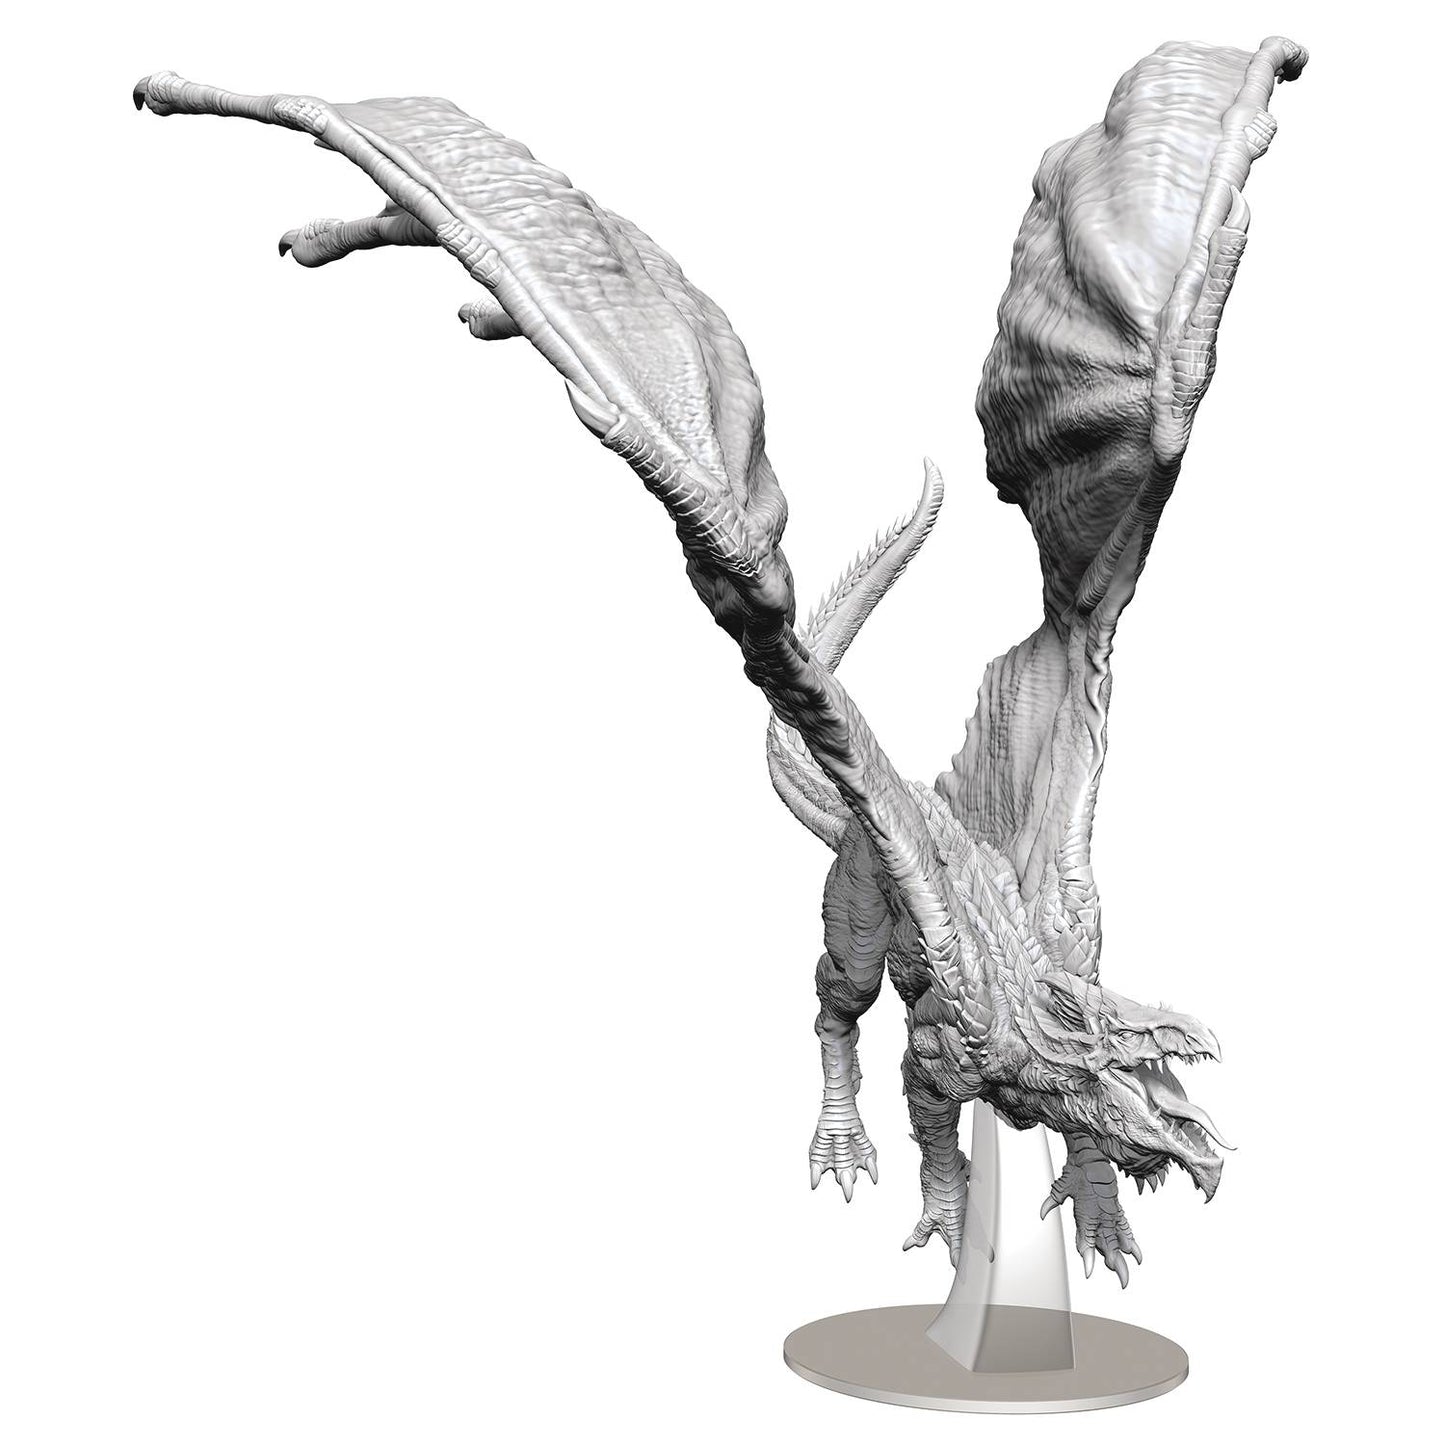 D&D Unpainted Adult White Dragon Miniature